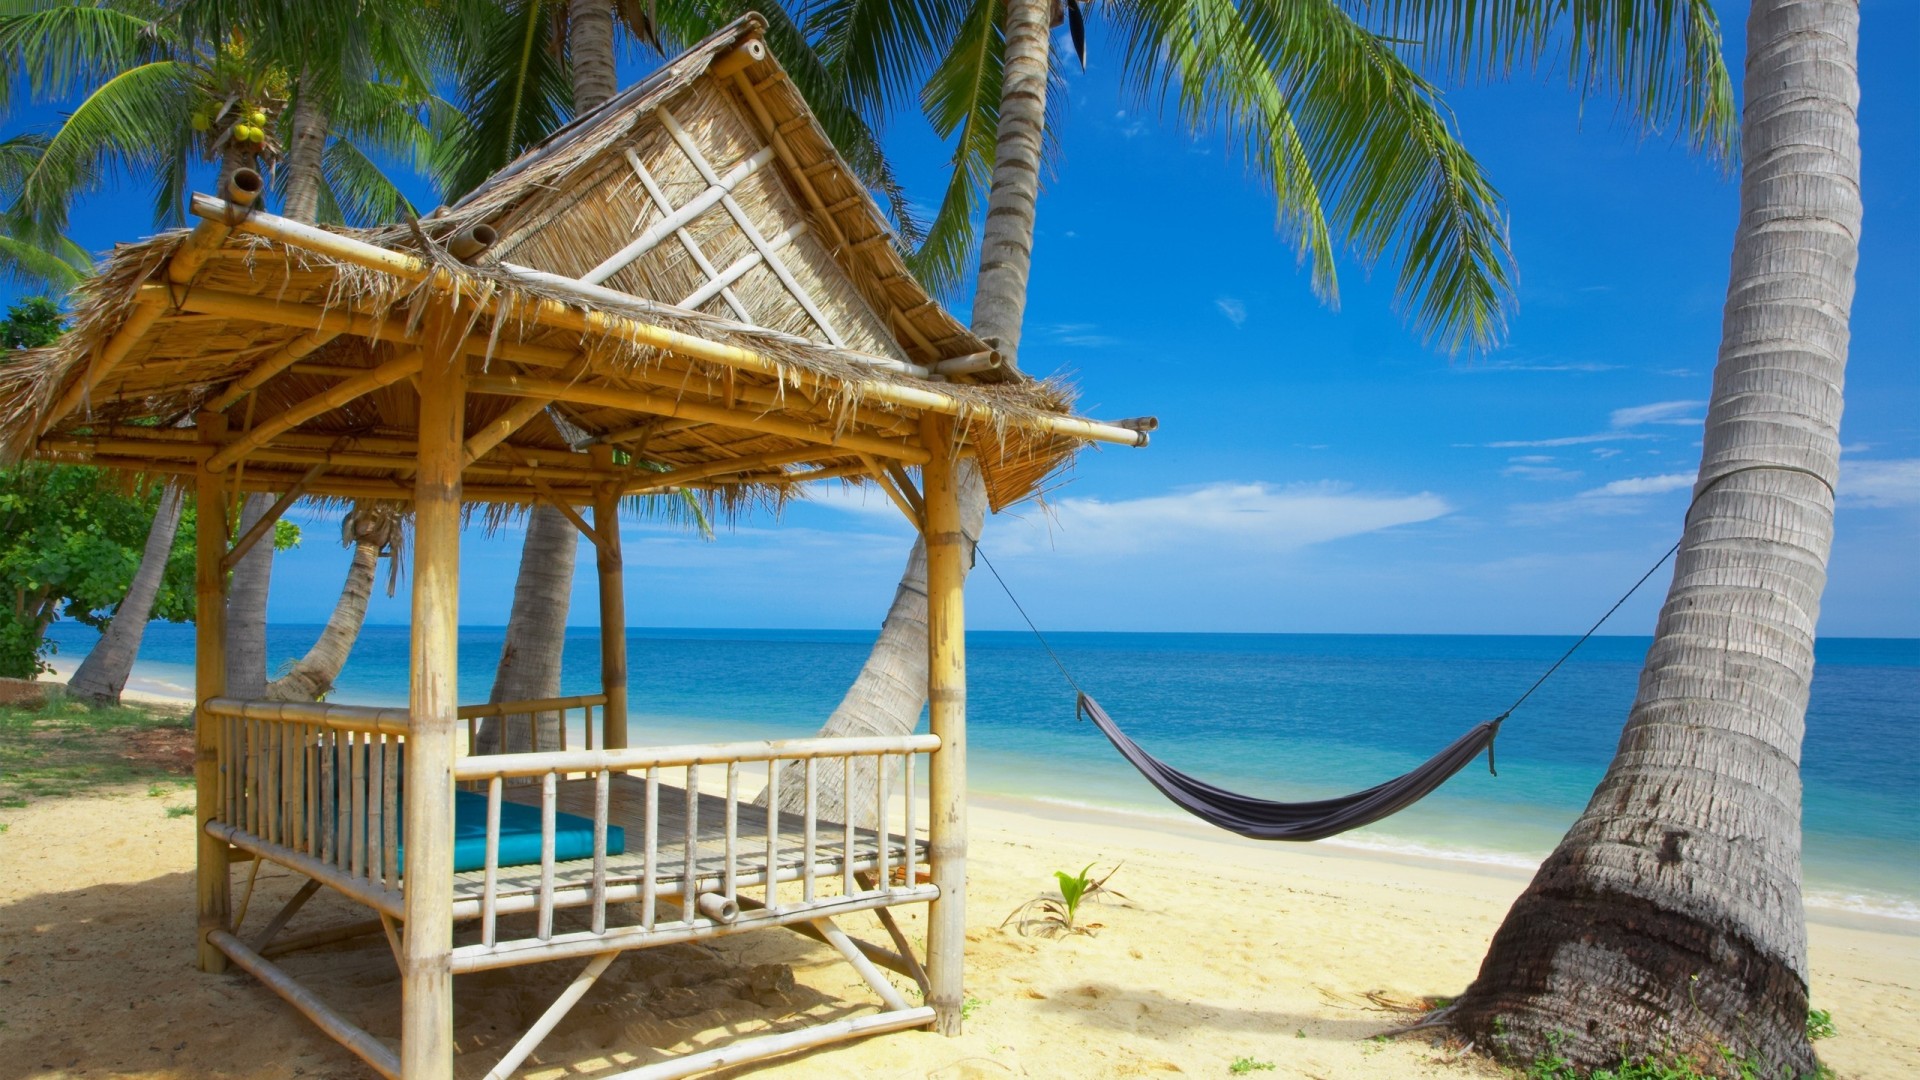 海水,沙滩,蓝天,棕榈树,吊床,海边风景桌面壁纸